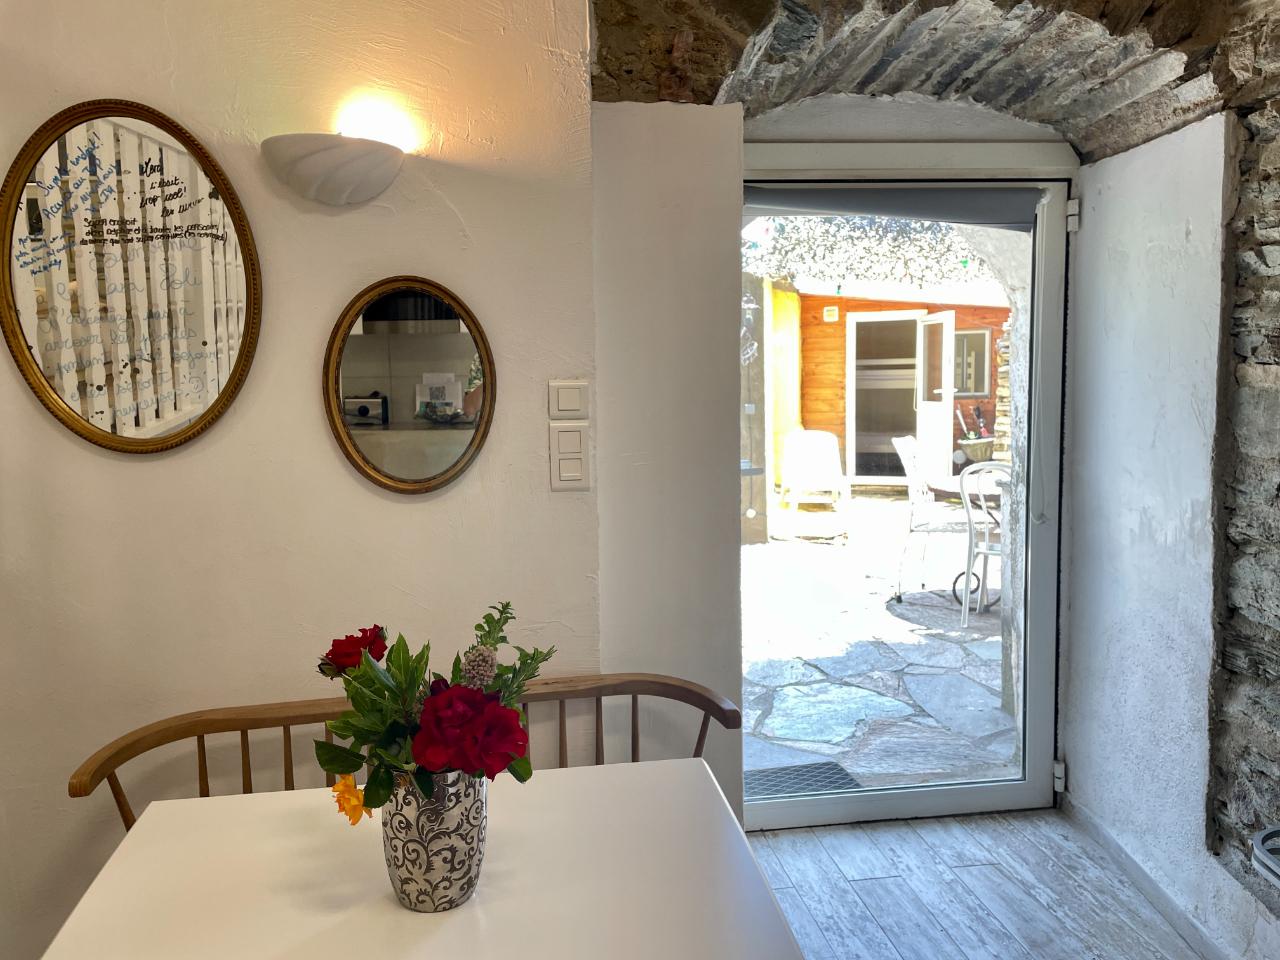 Logement GreenGo: Casa Poli: le tiny loft, hommage au Grand-père, ambiance cocooning et farniente - Image 18